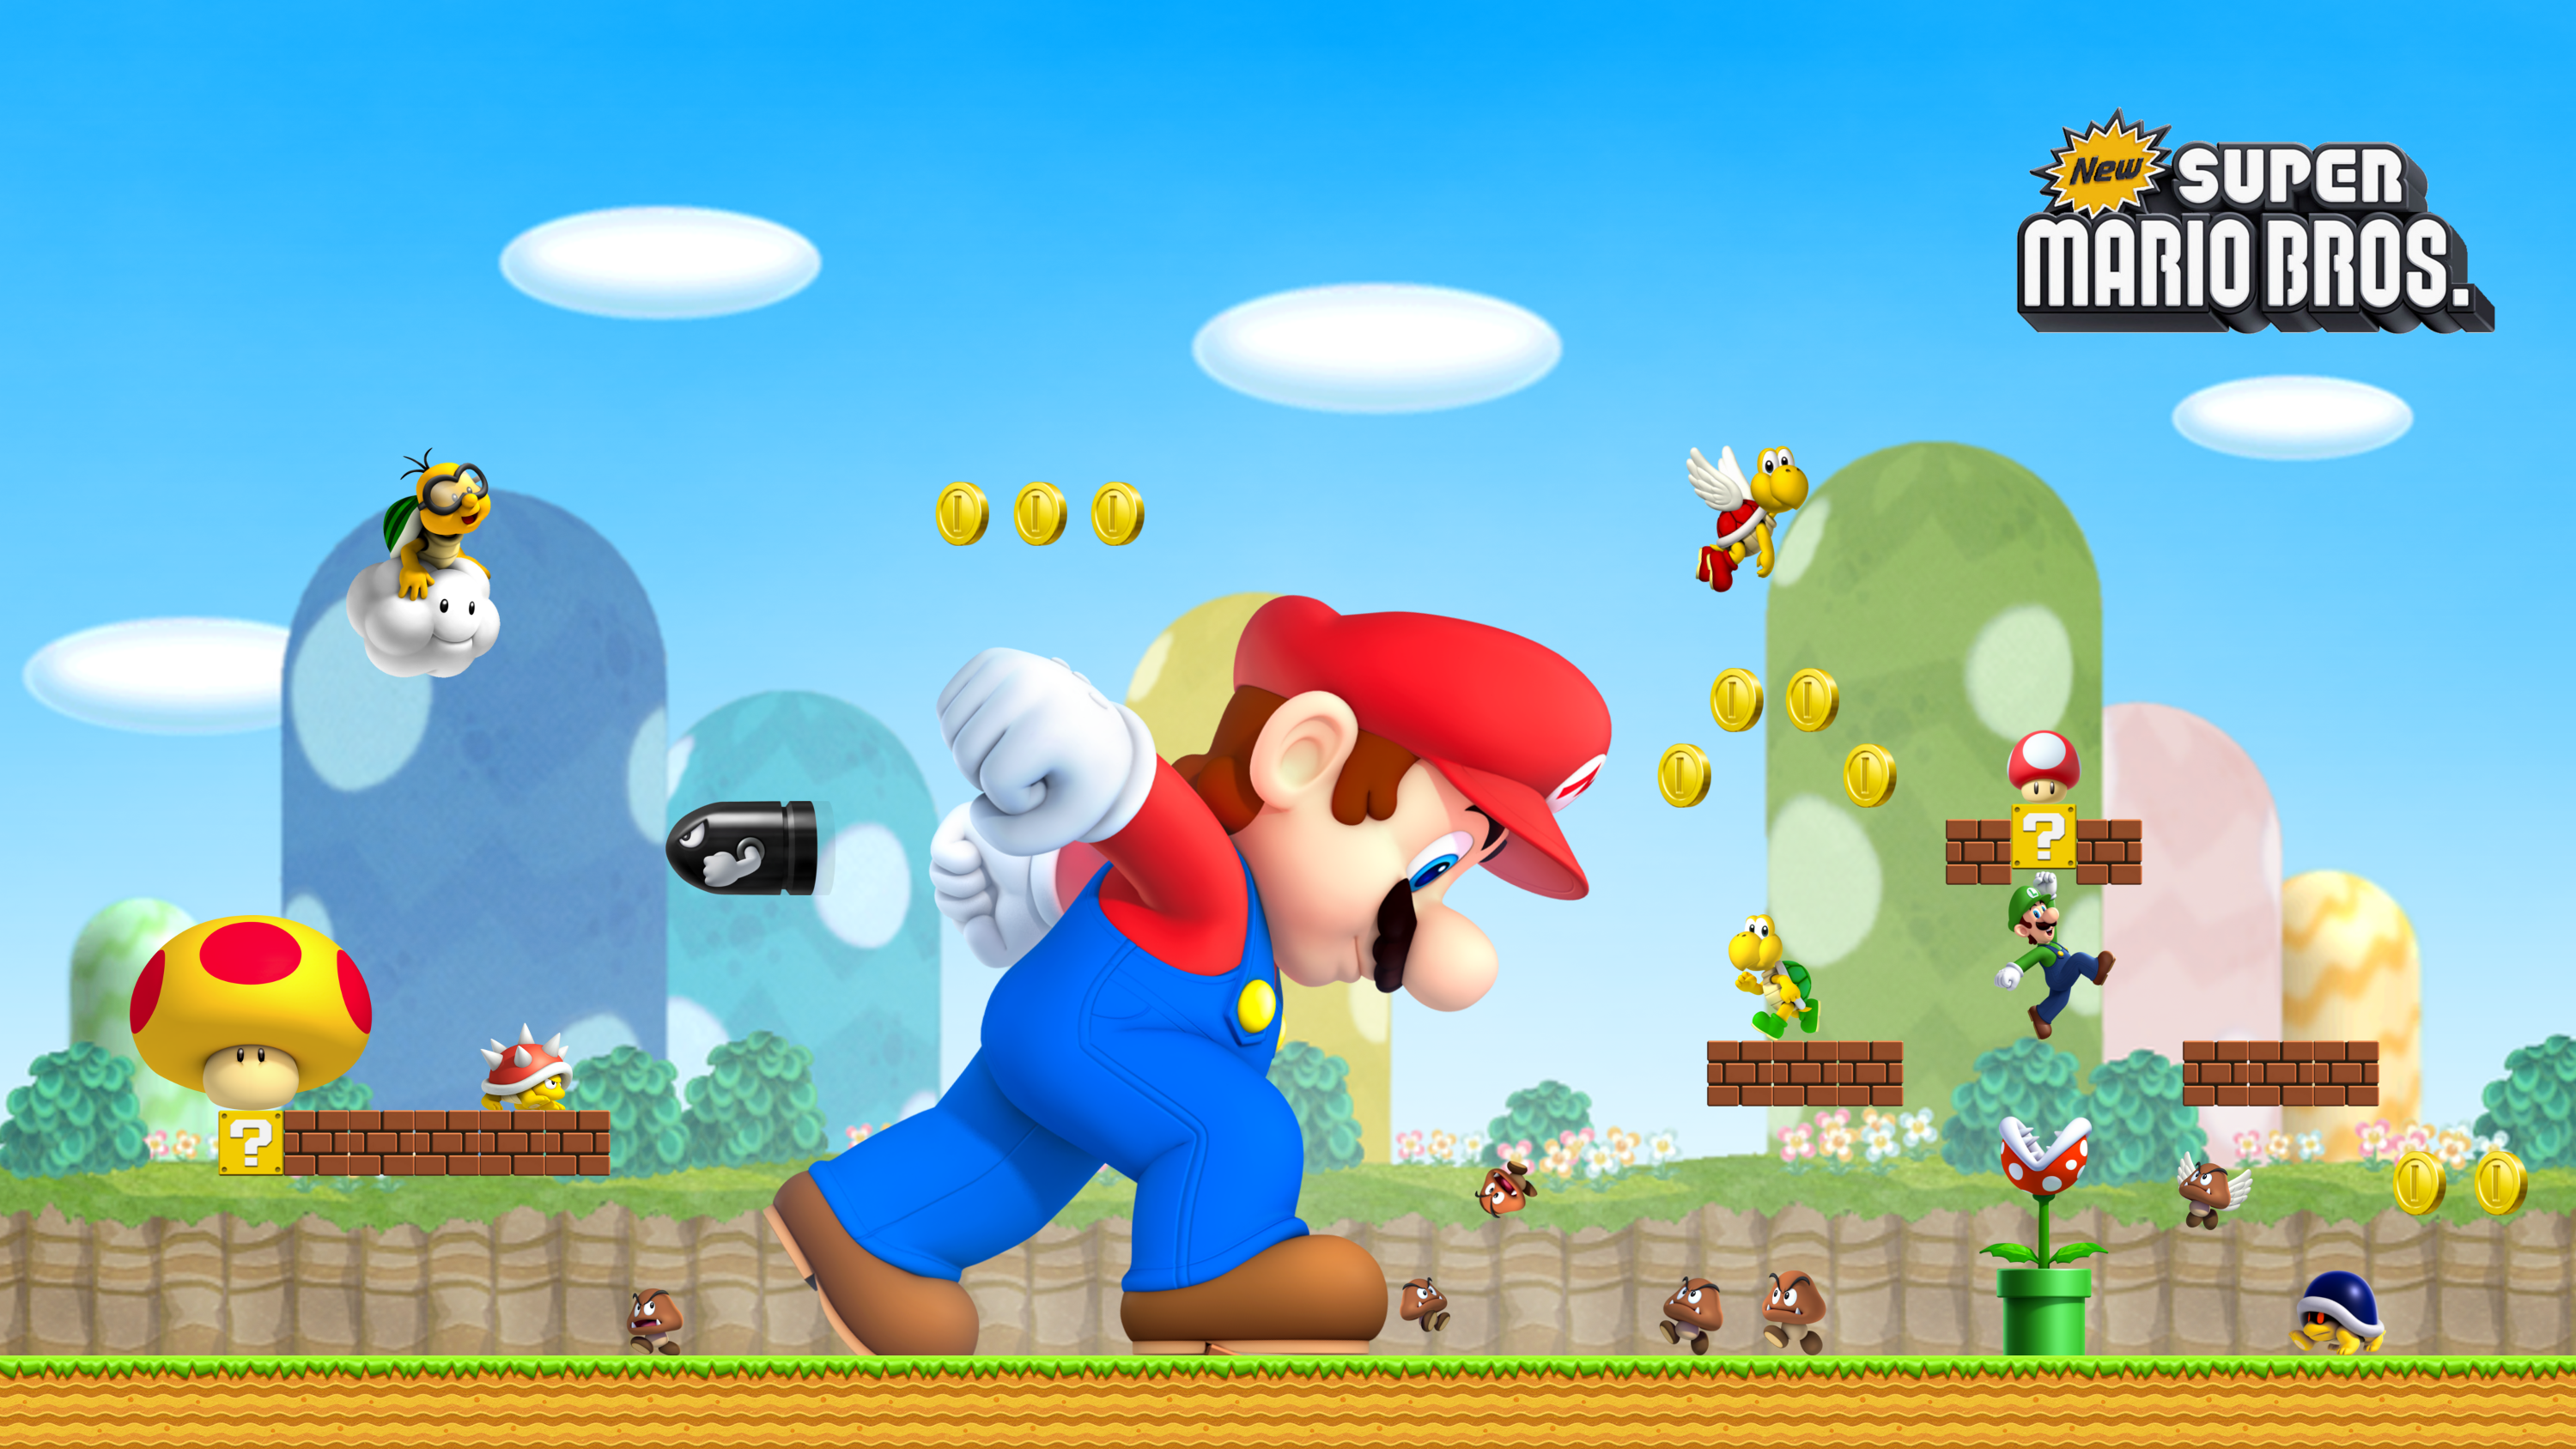 New Super Mario Bros. HD Wallpaper by